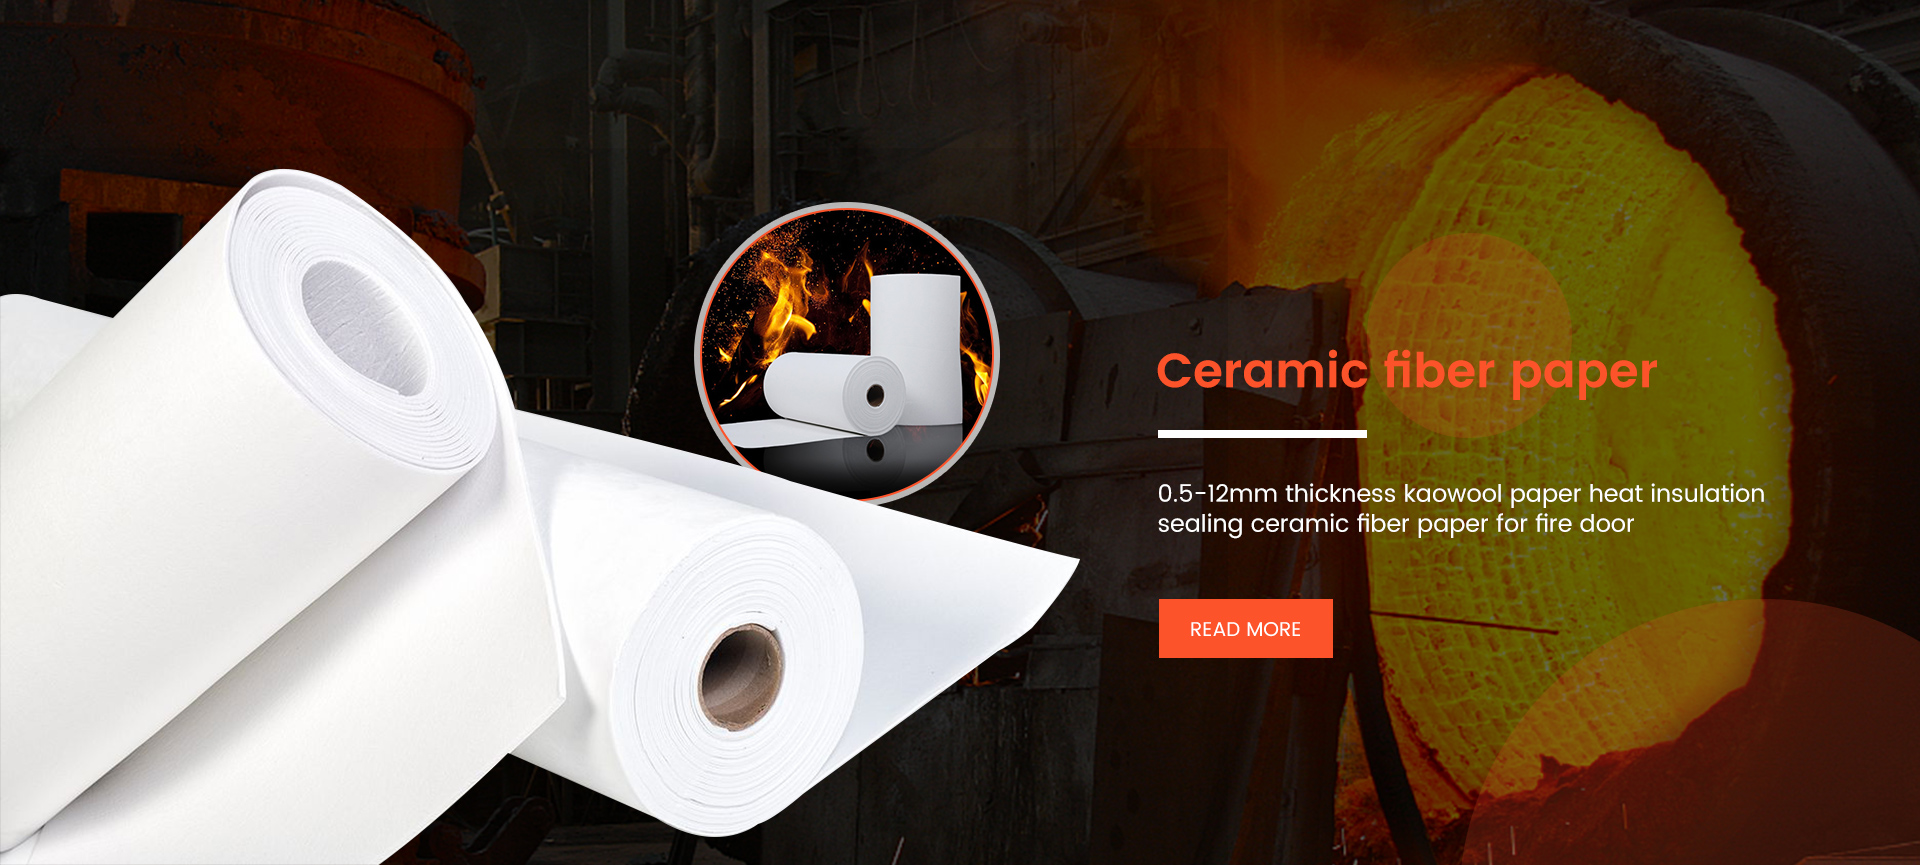 Ceramic fiber products